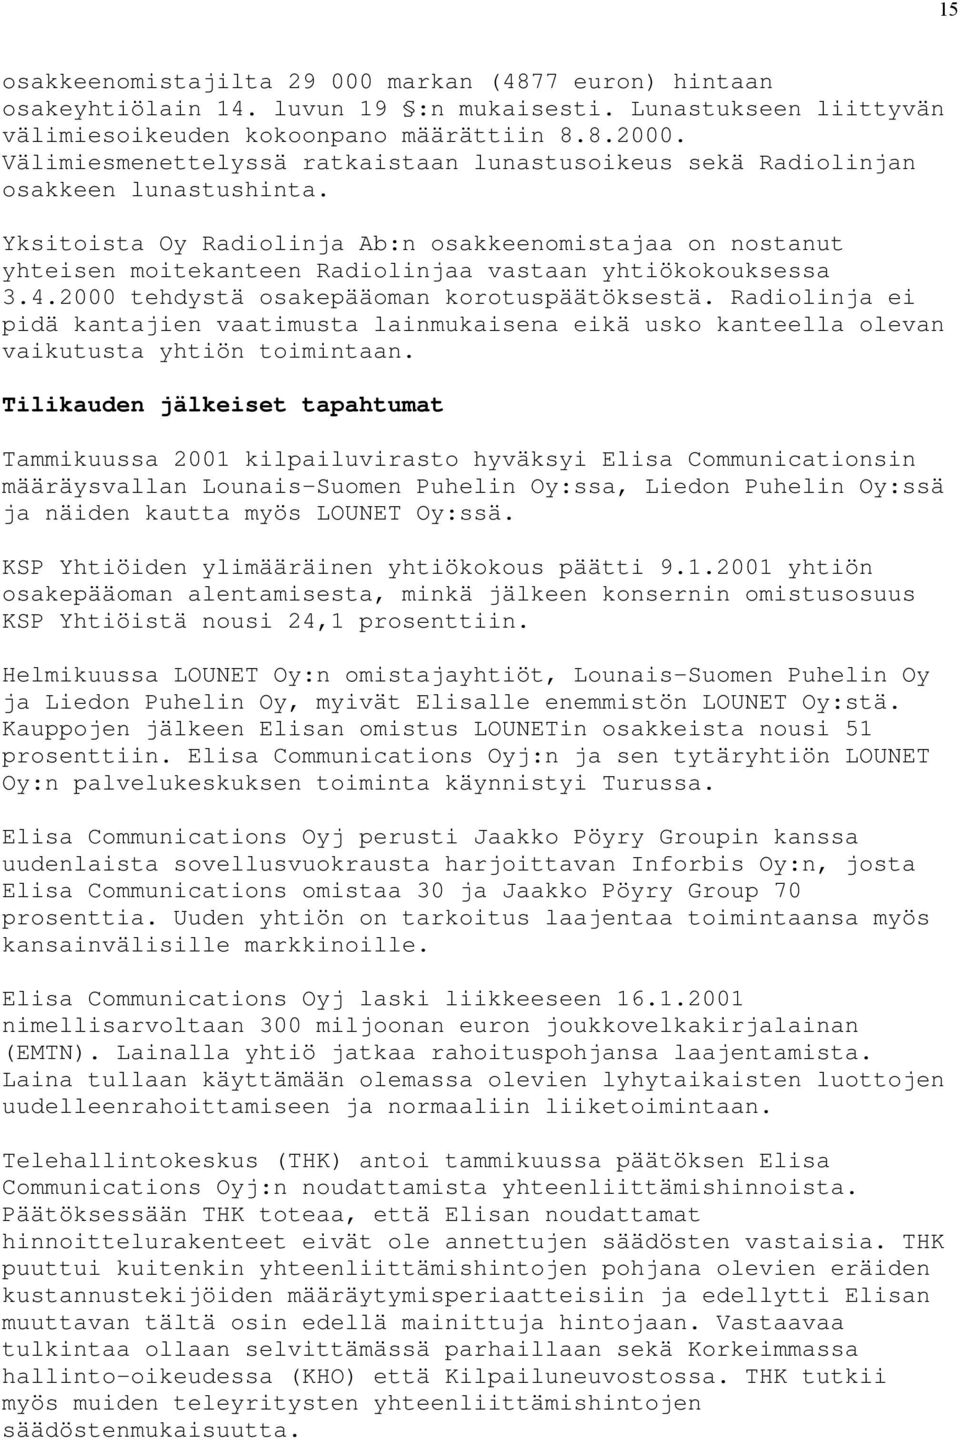 Yksitoista Oy Radiolinja Ab:n osakkeenomistajaa on nostanut yhteisen moitekanteen Radiolinjaa vastaan yhtiökokouksessa 3.4.2000 tehdystä osakepääoman korotuspäätöksestä.